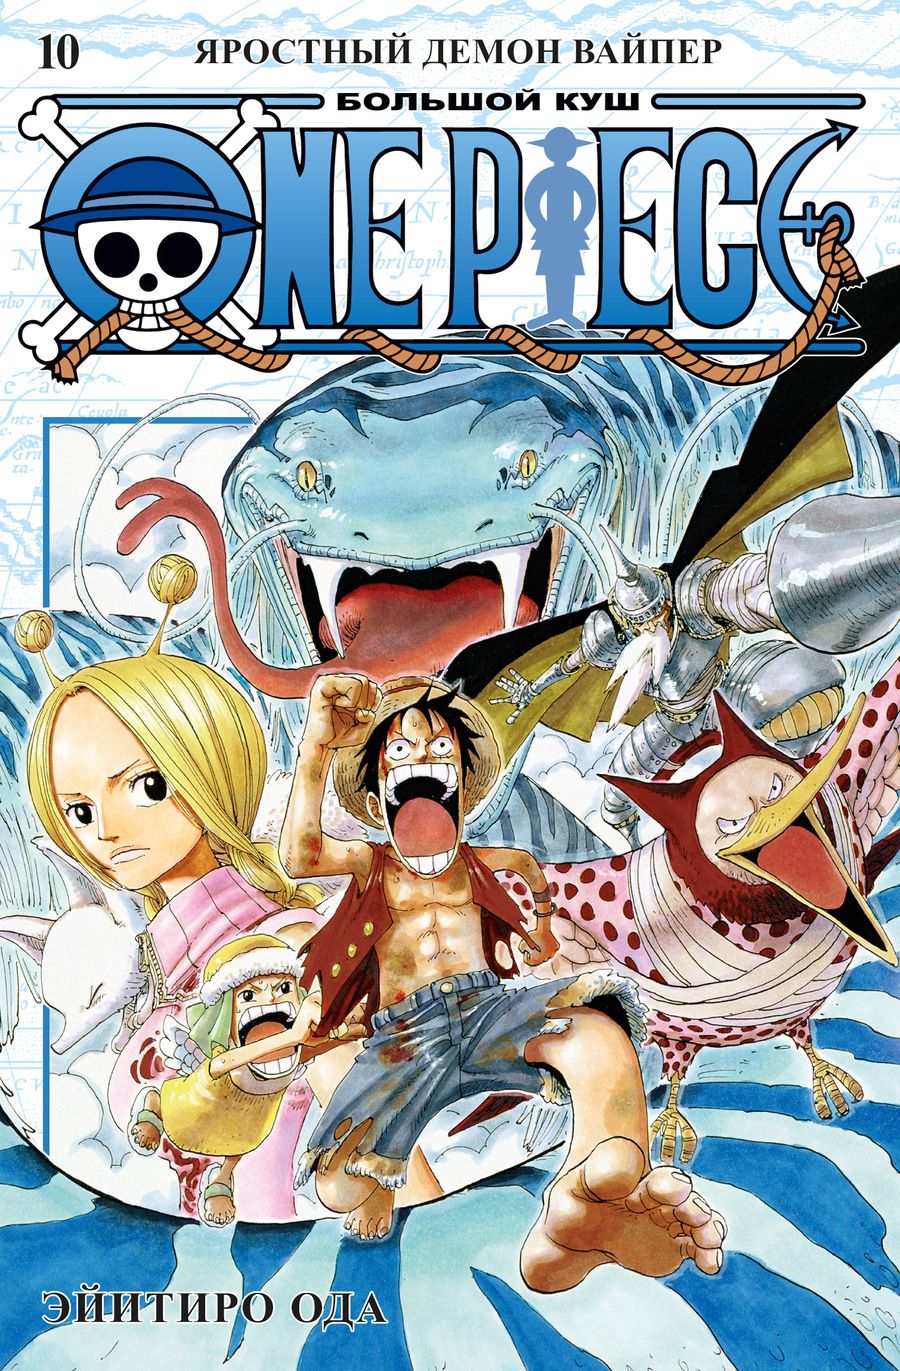 Обложка книги "Эйитиро Ода: One Piece. Большой куш. Книга 10. Яростный Демон Вайпер"